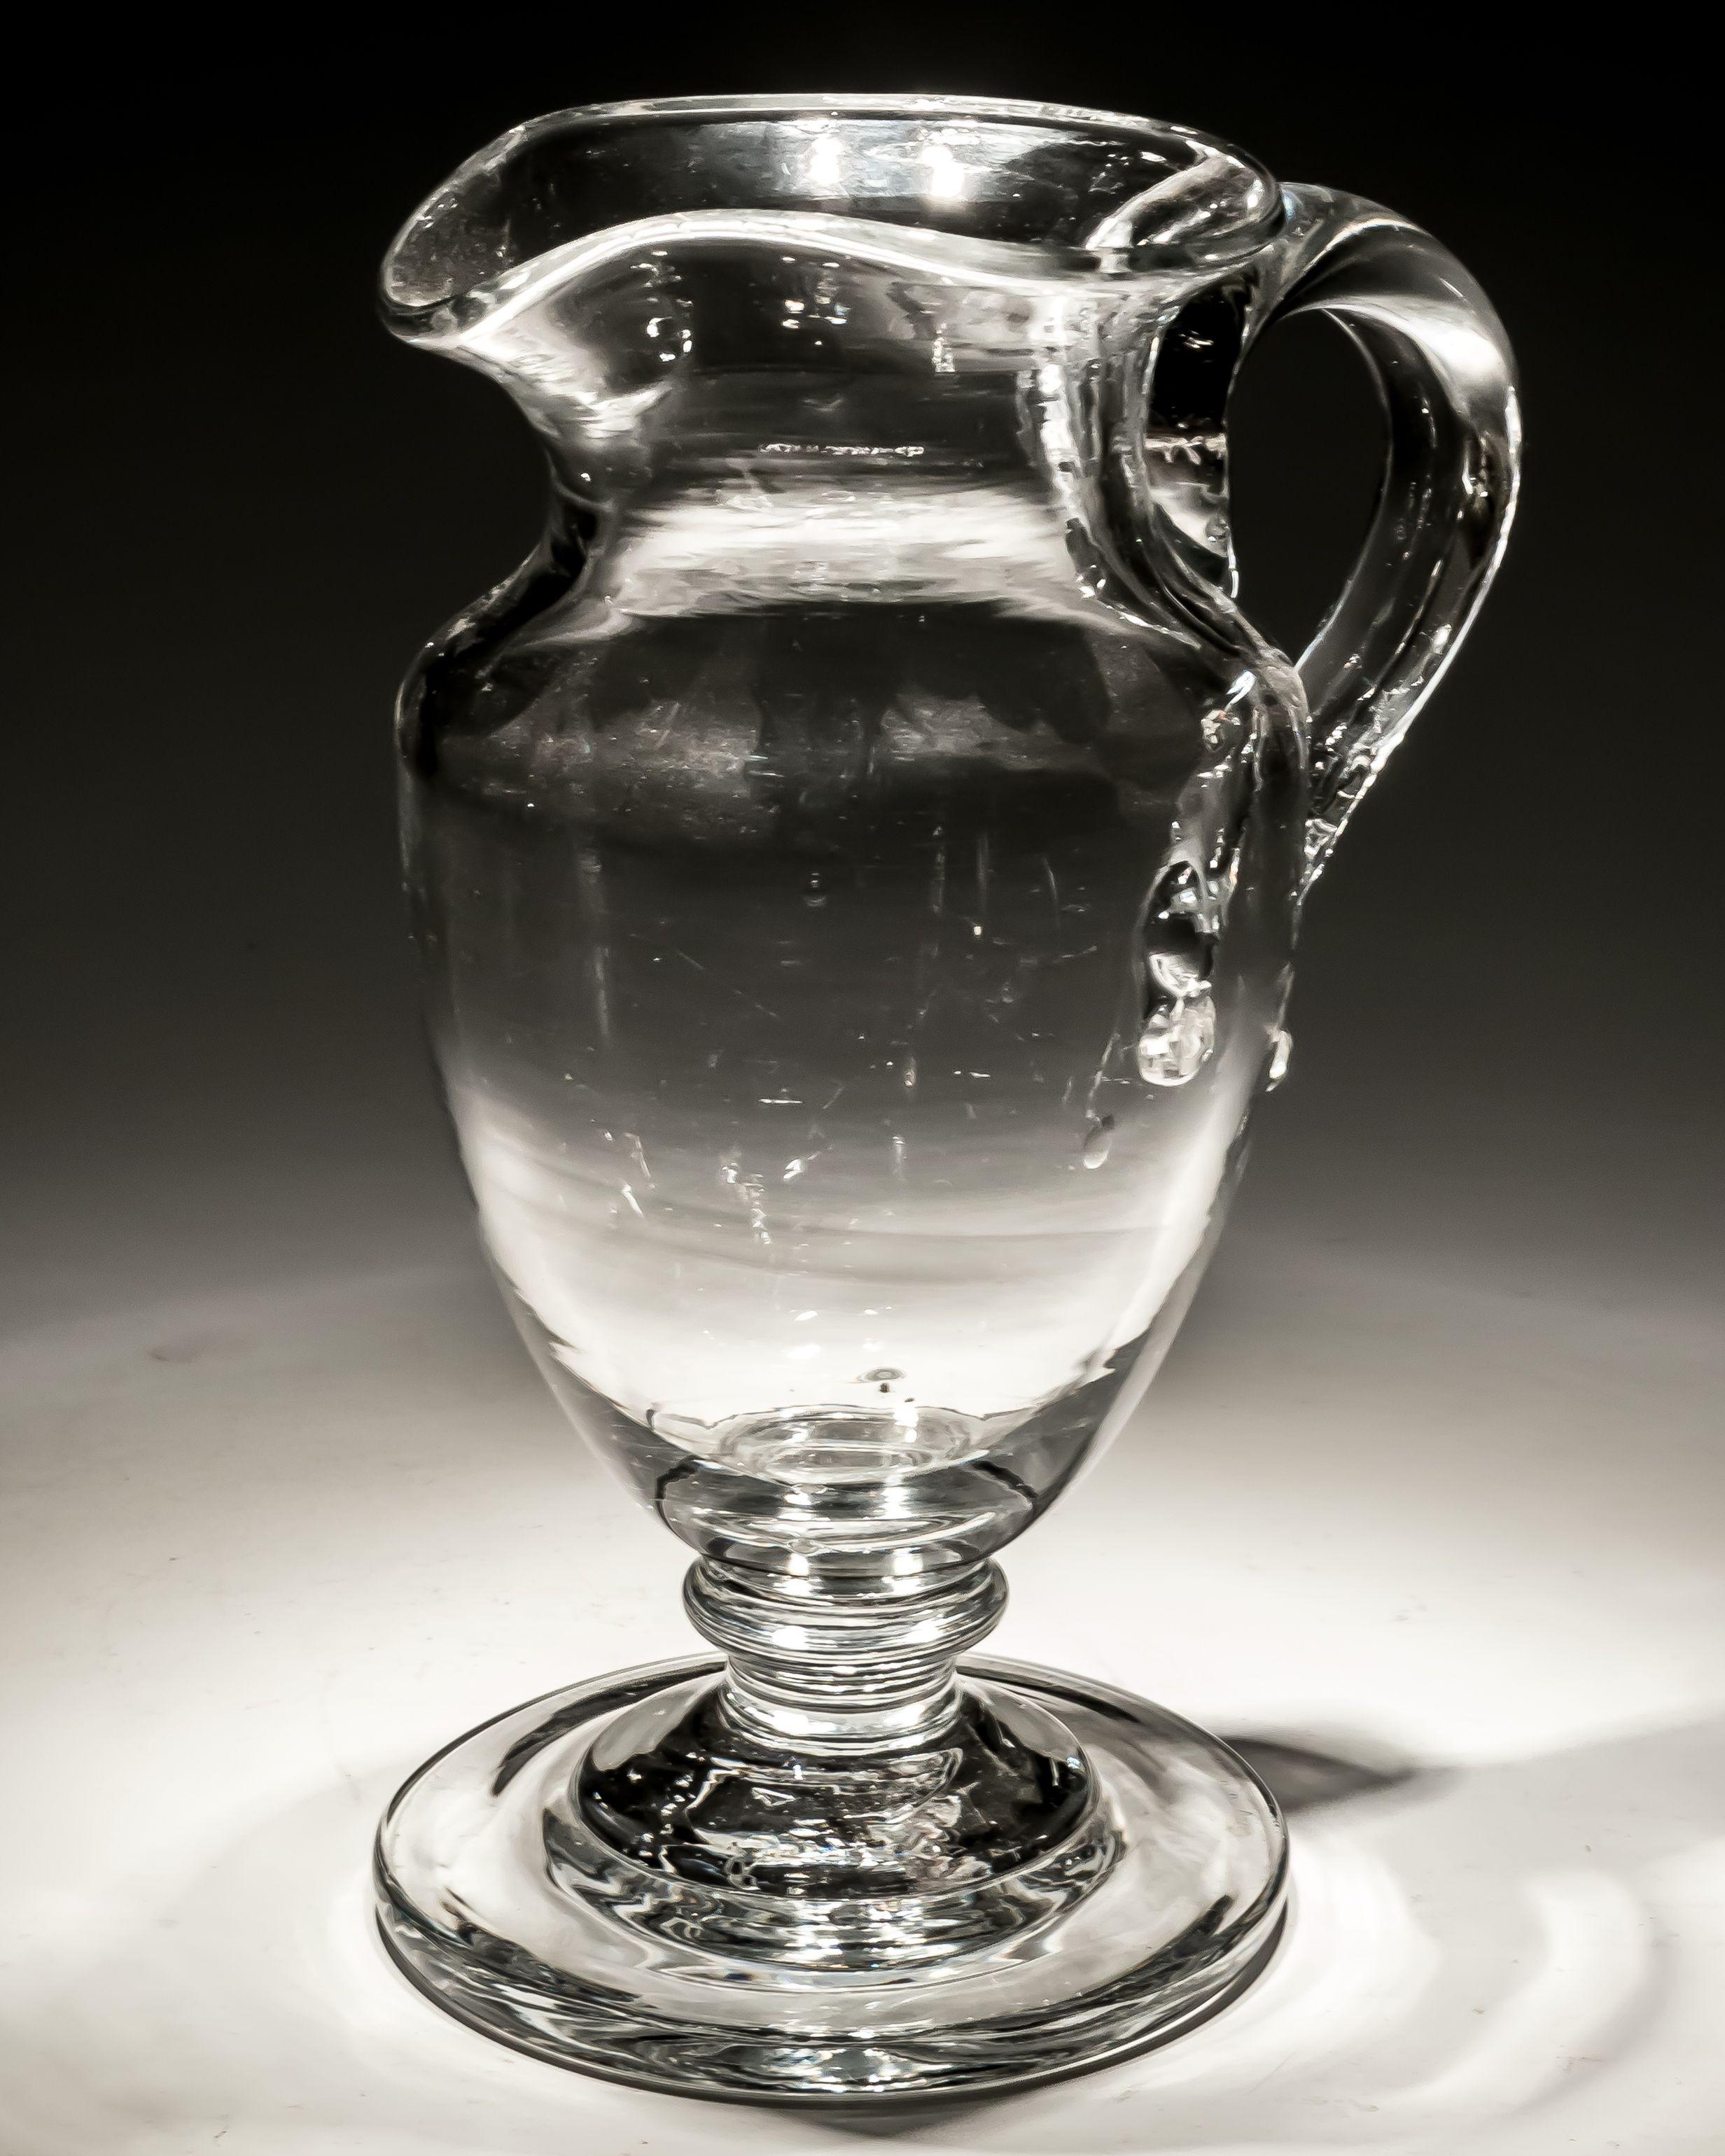 Une cruche à eau d'époque géorgienne.

Angleterre, vers 1795.

Mesures : Hauteur : 21,5 cm (8 1/2